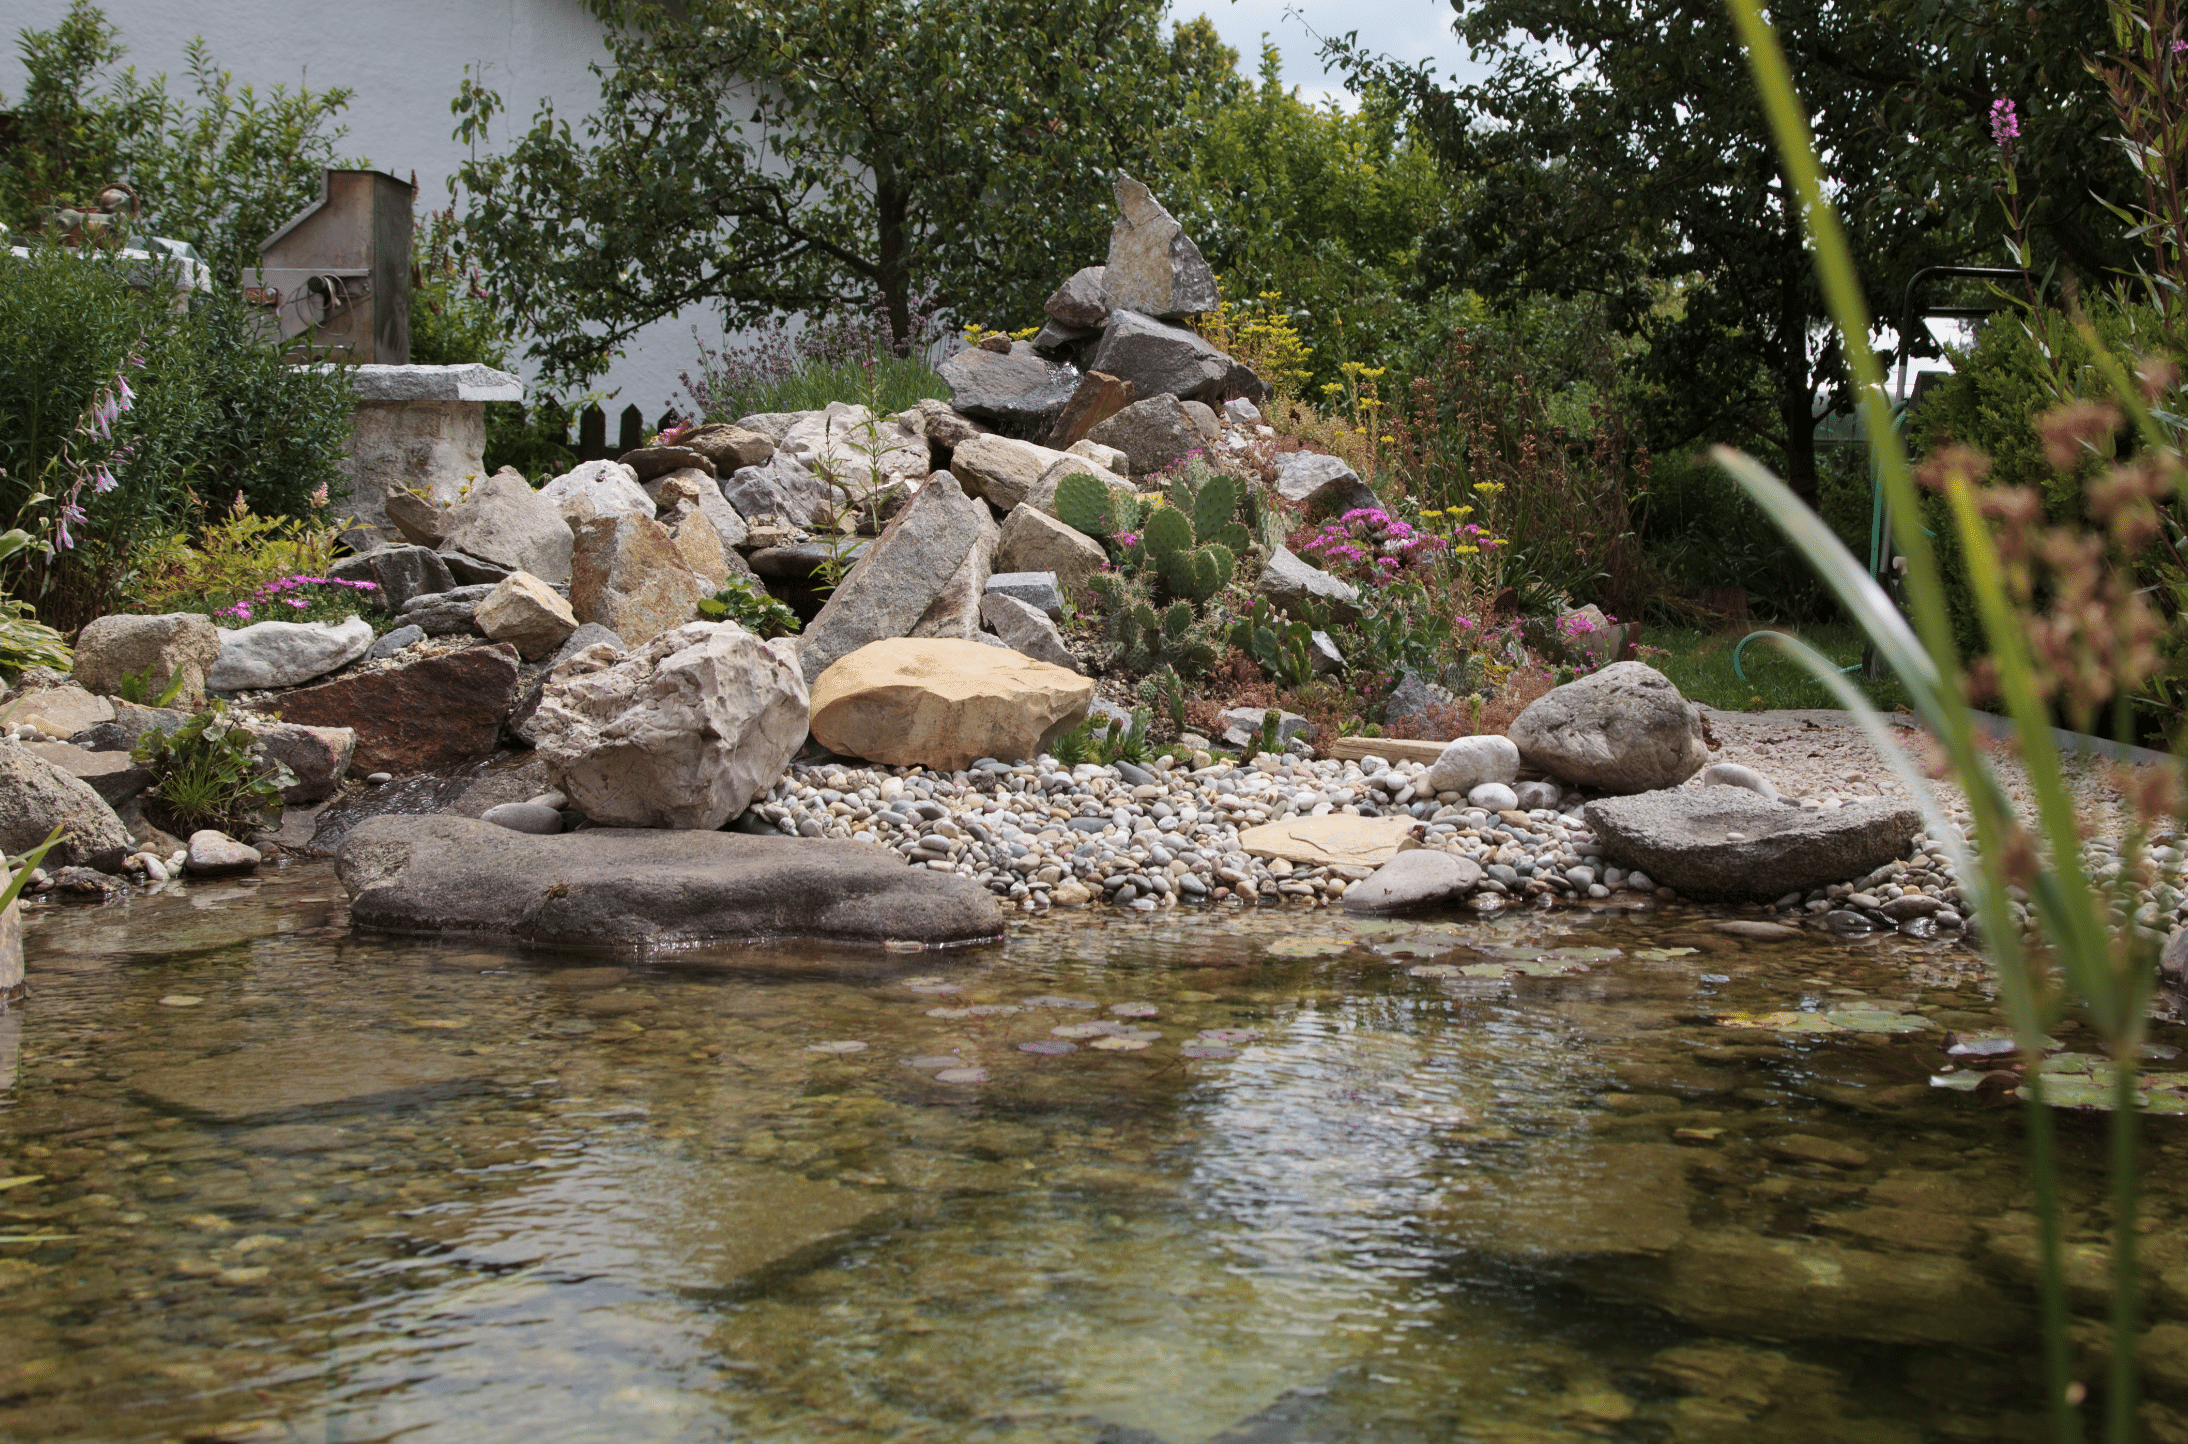 Hablesreiter legte in einem Teich eine kleine Insel an um darauf Steine zu platzieren und diesen Berg mit exotischen Pflanzen zu bepflanzen.